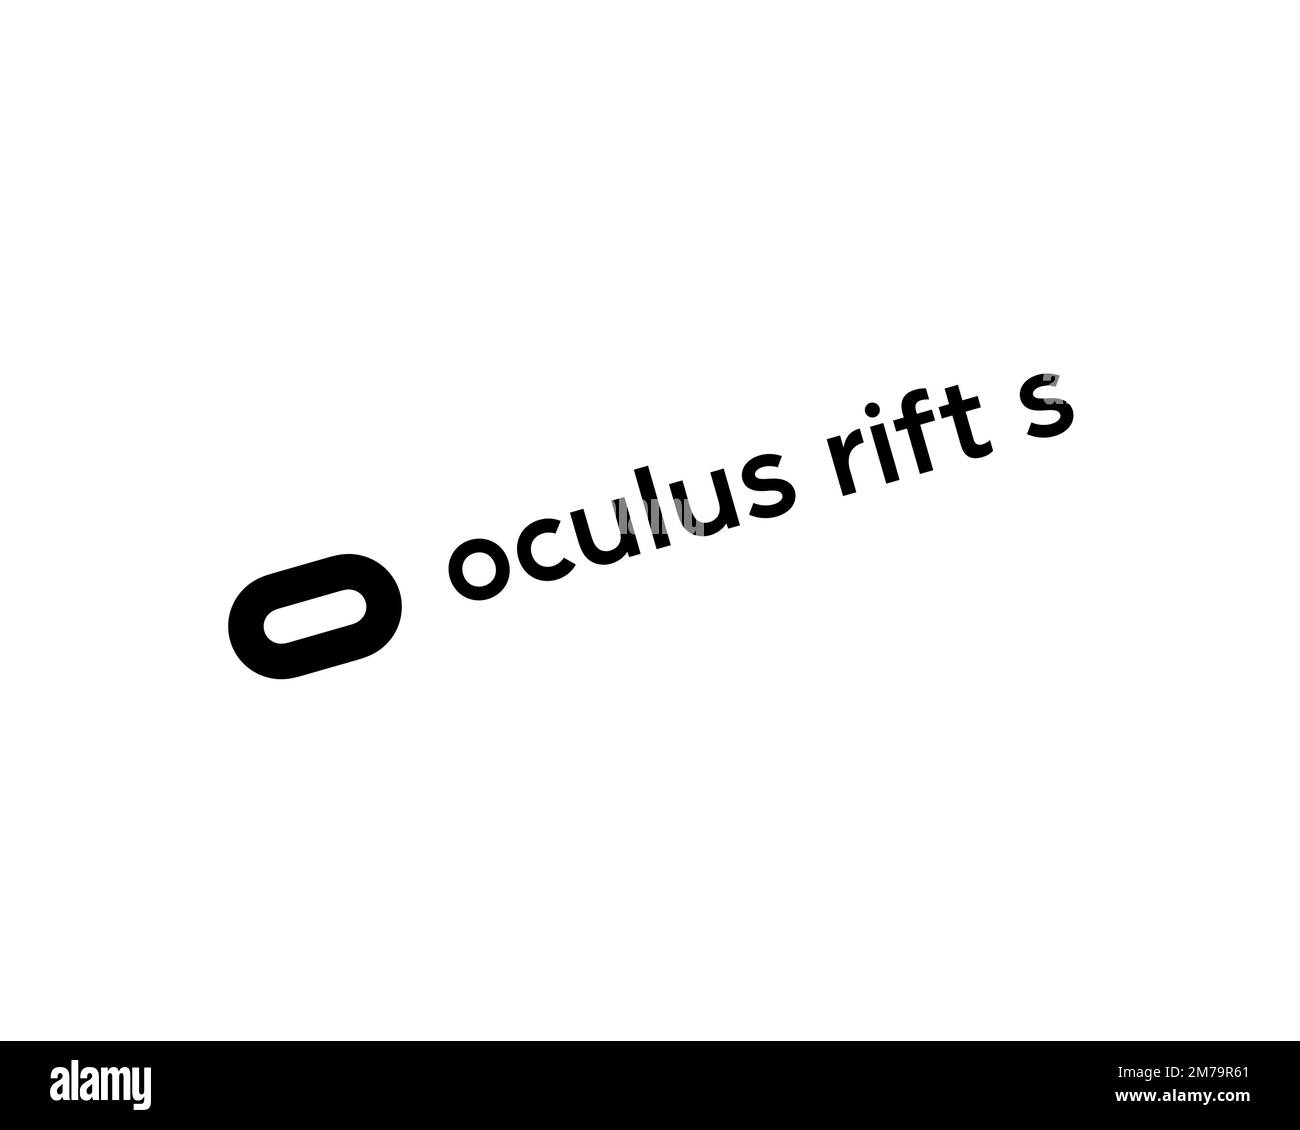 Oculus Rift S, logo pivoté, arrière-plan blanc Banque D'Images